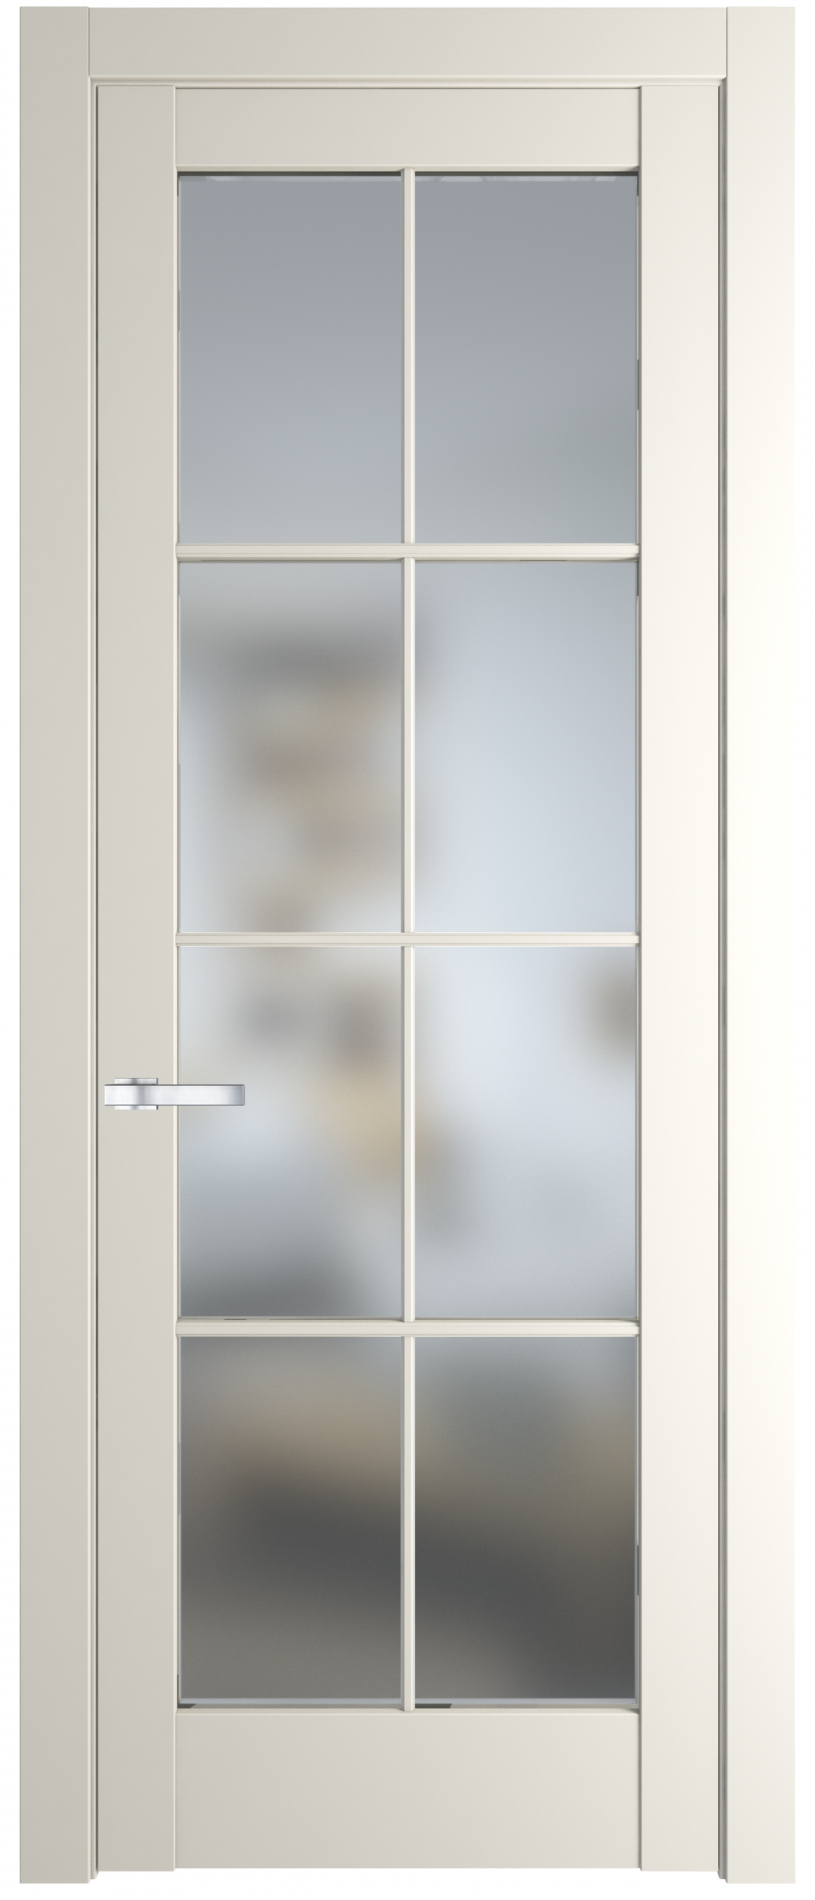 межкомнатные двери  Profil Doors 3.1.2/4.1.2 (р.8) PD  перламутр белый